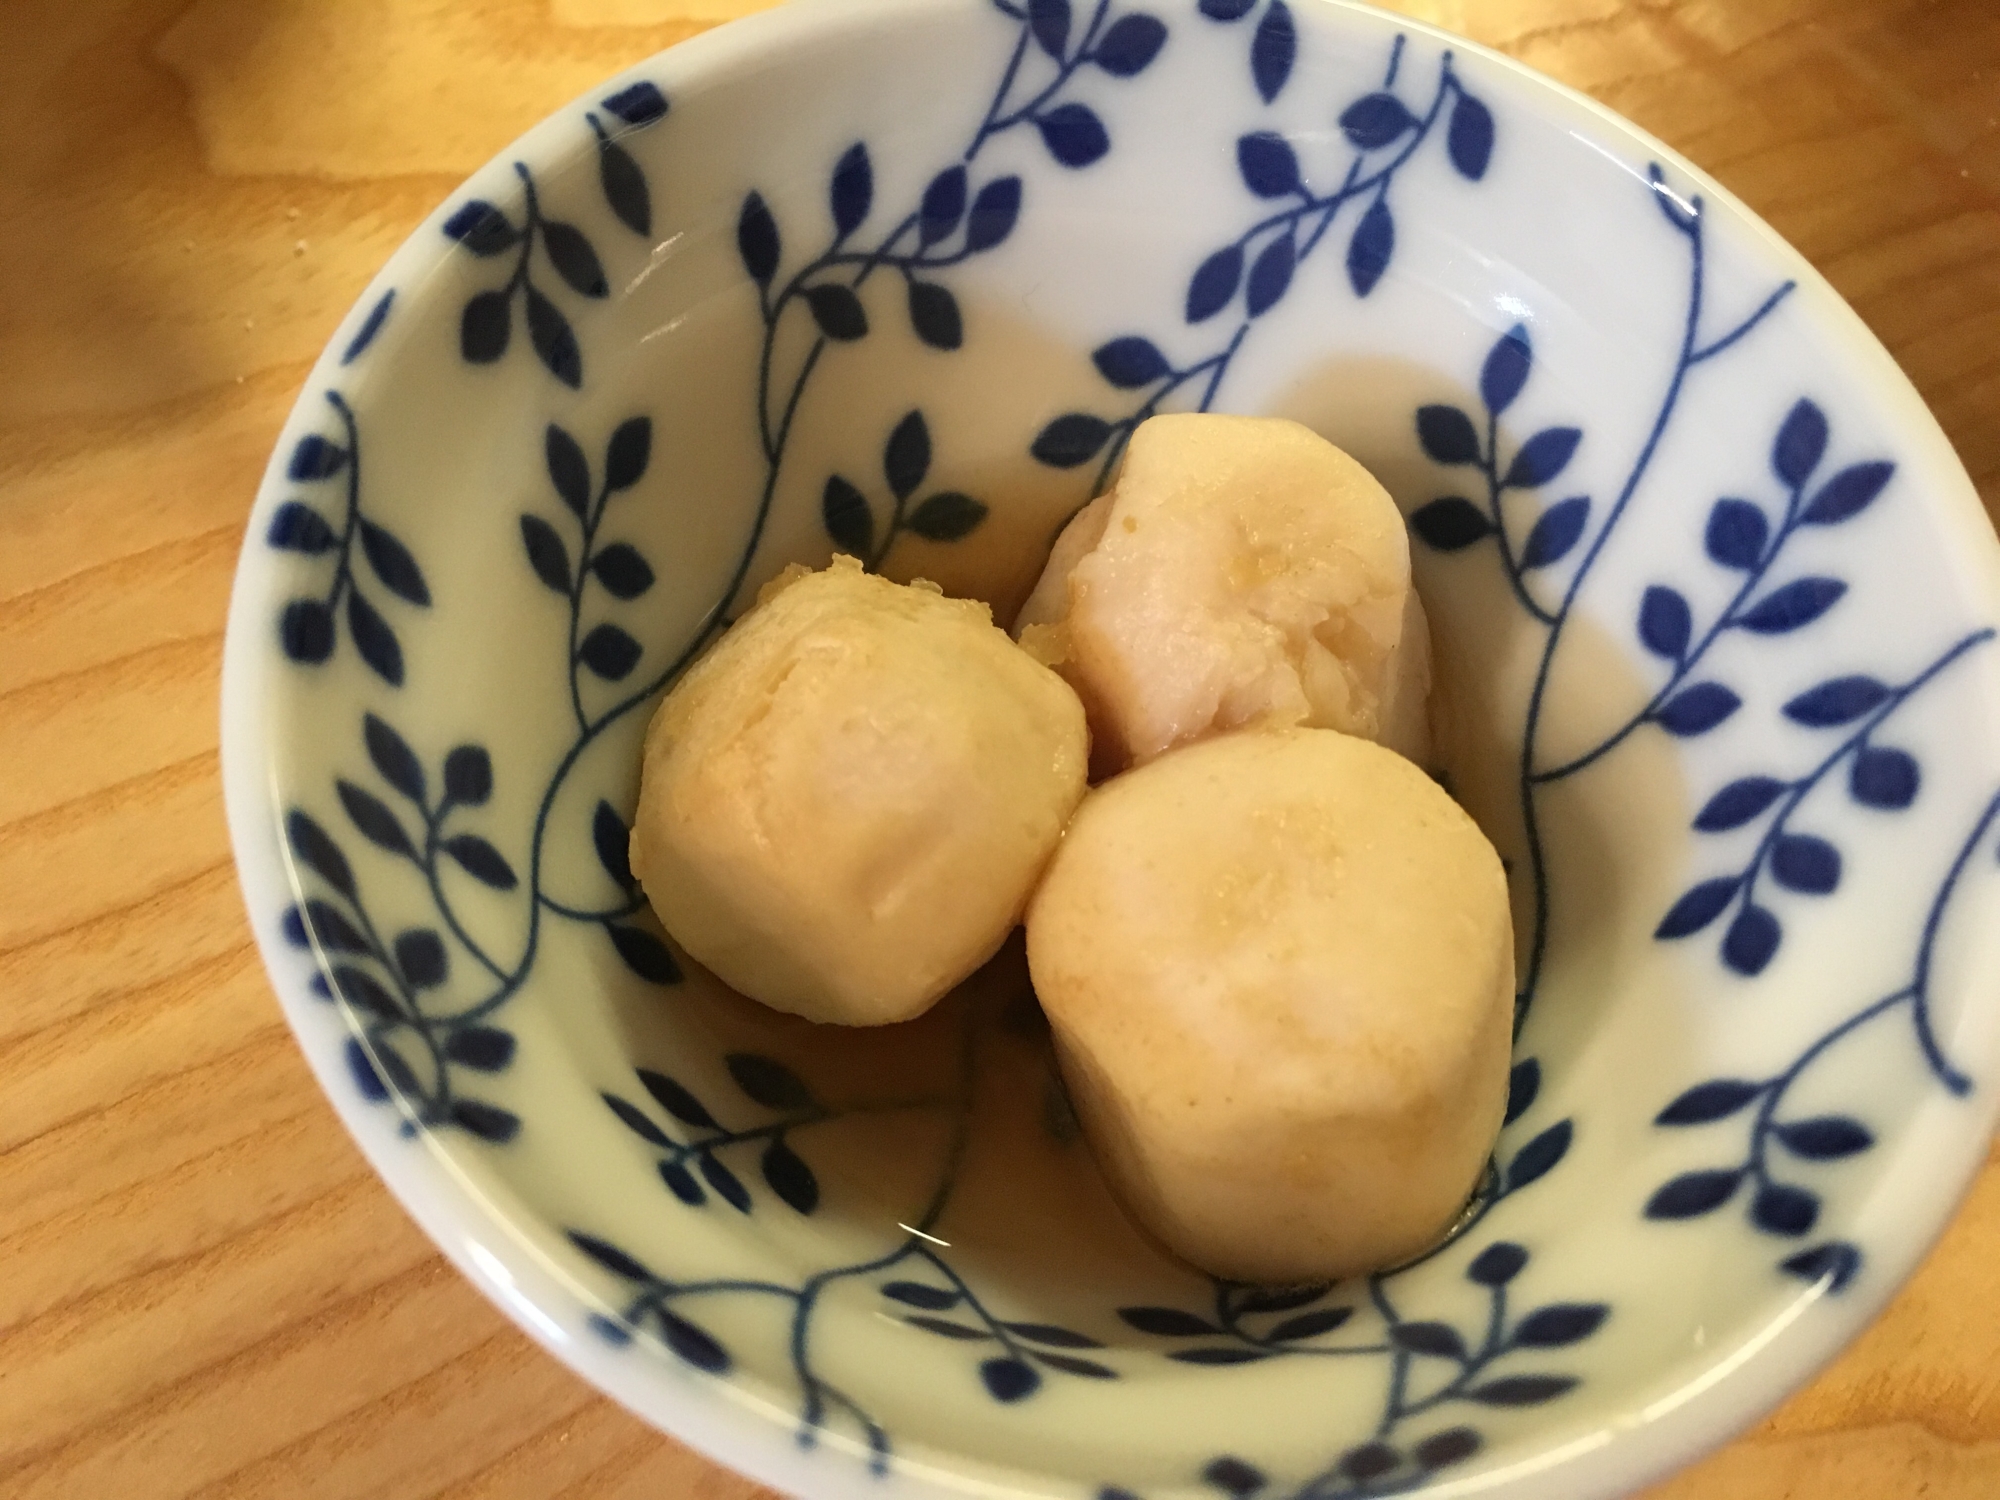 里芋の生姜煮込み